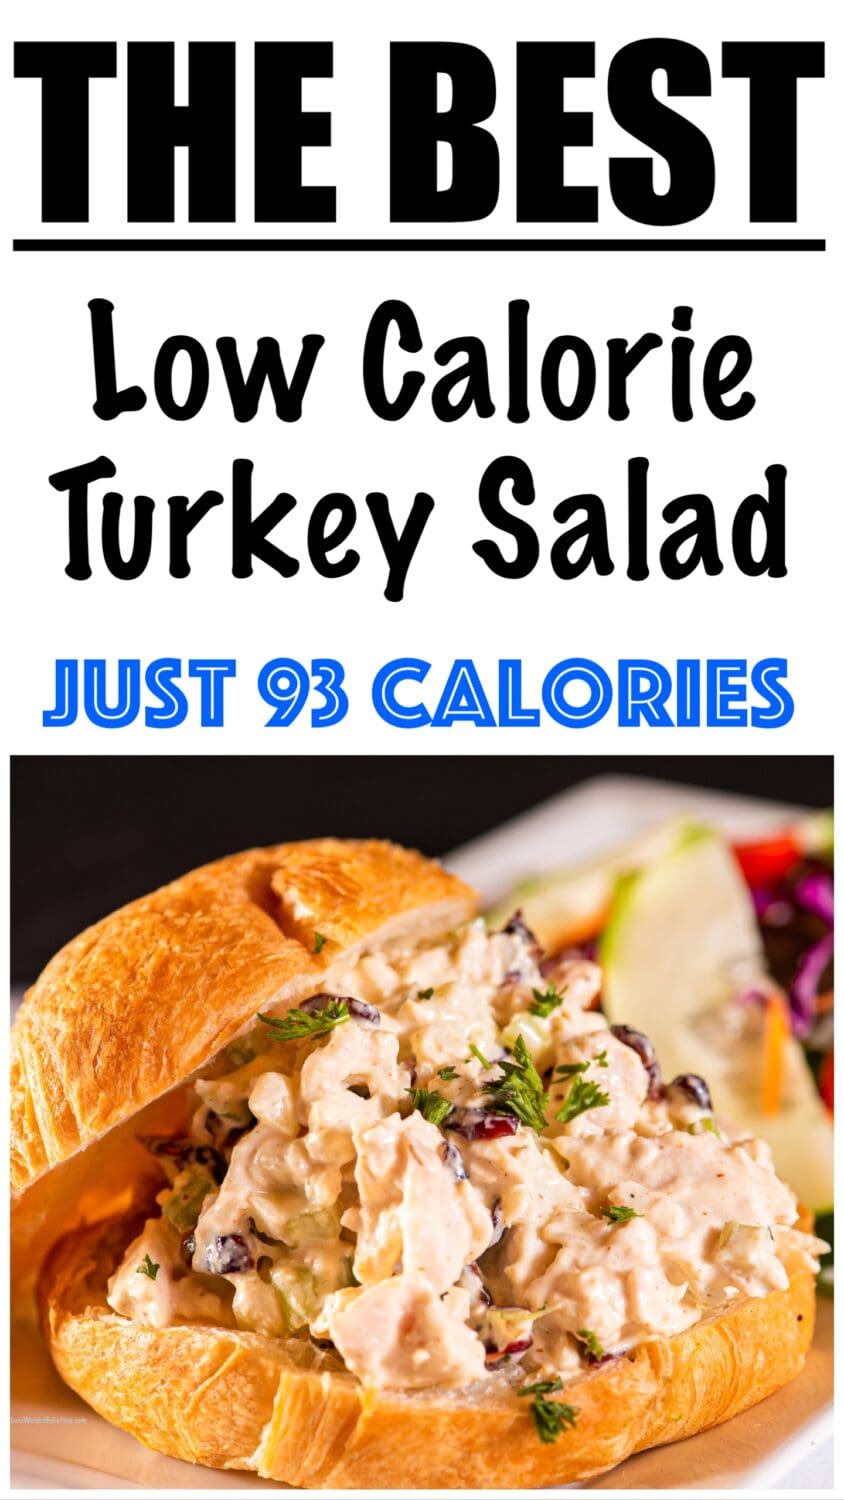 Low Calorie Turkey Salad